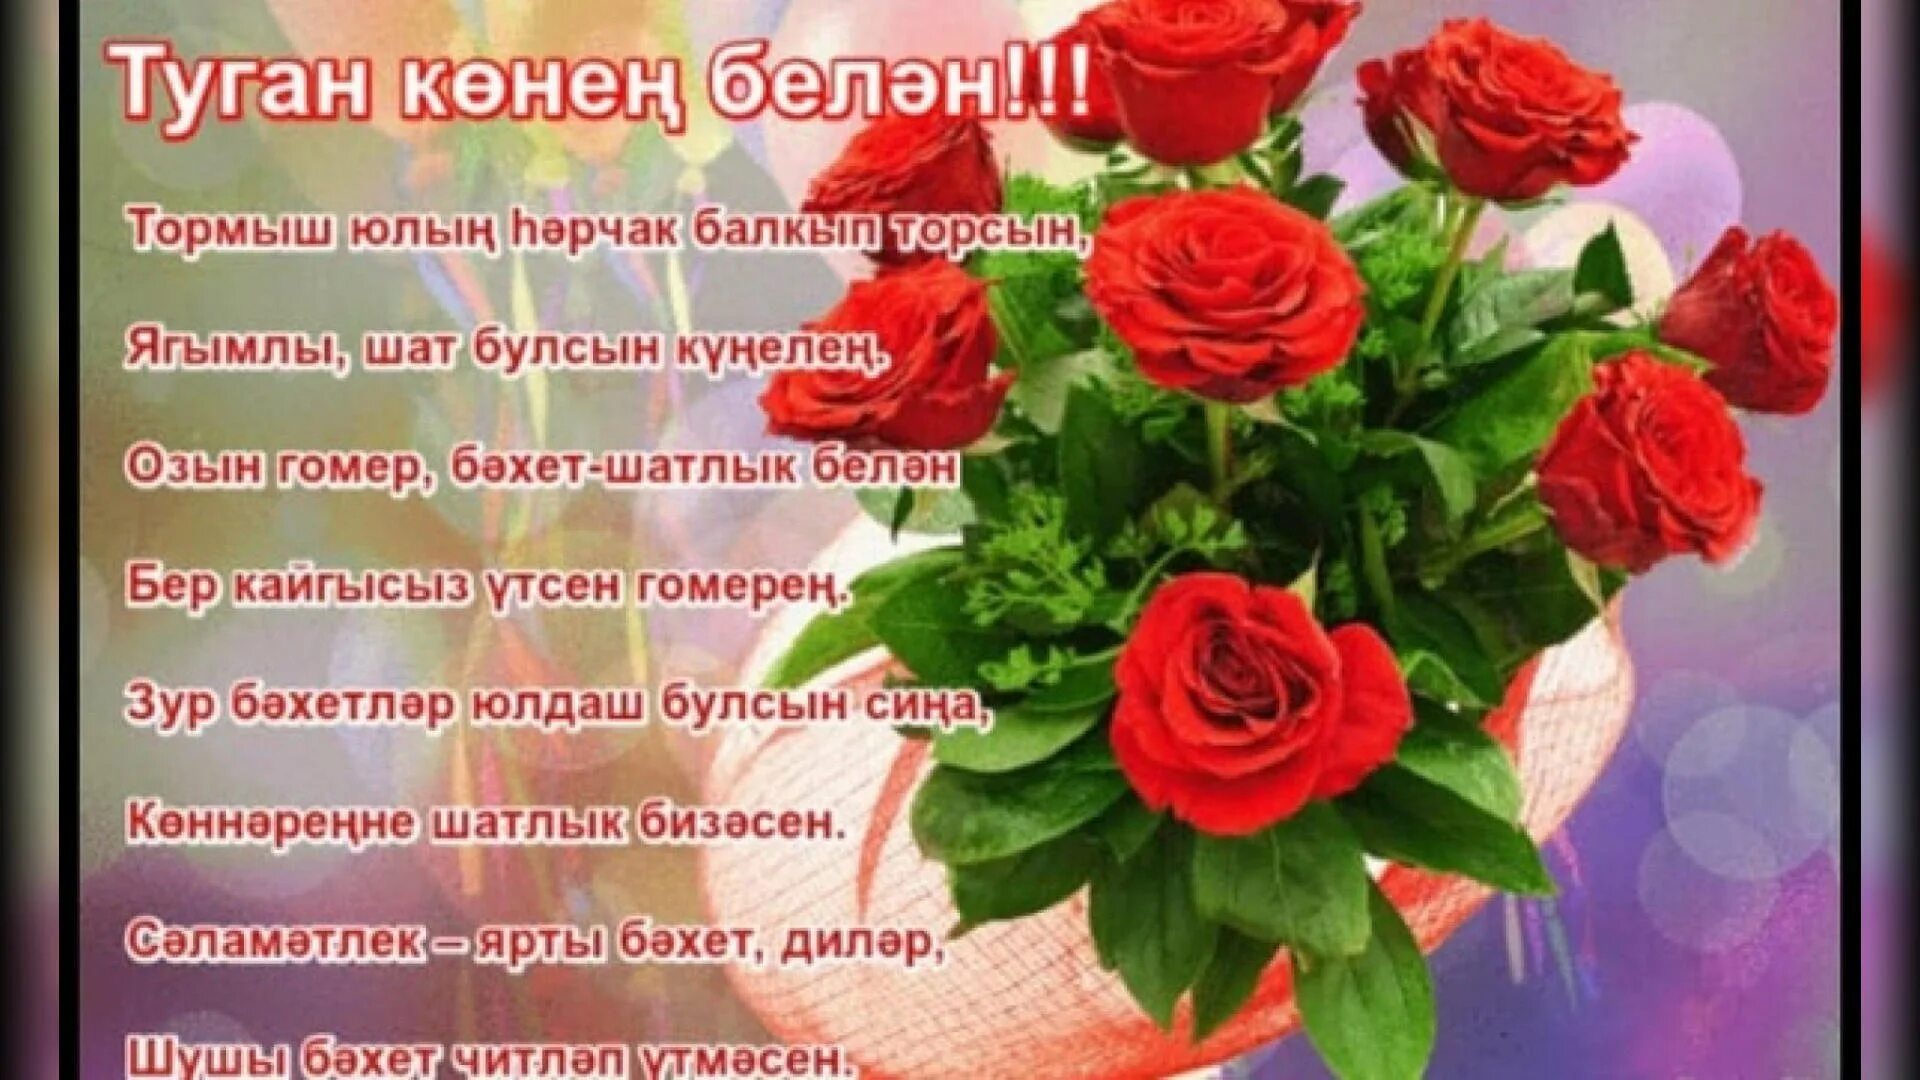 Туган конен белэн котлыйбыз. Татарские поздравления с днем рождения. Поздравления с днём рождения на татарском языке. Поздравления с днём рождения женщине на татарском языке. Поздравления с днём рождения женщине на татарском.